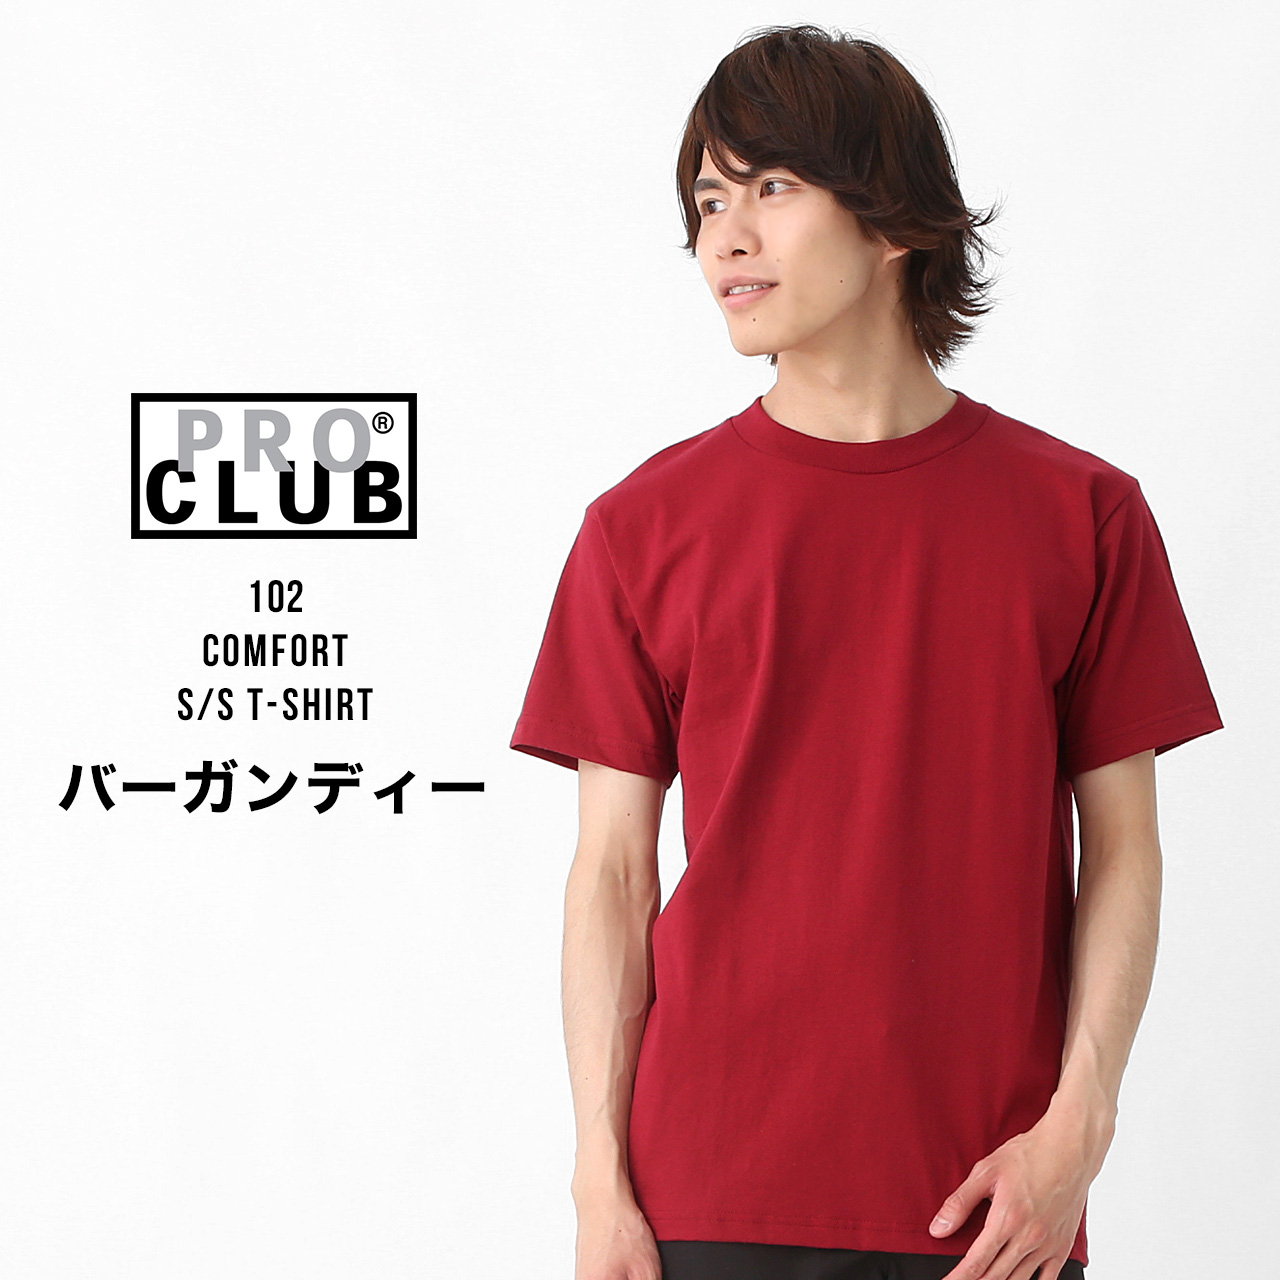 【5/24(金)再入荷】 プロクラブ Tシャツ コンフォート メンズ 無地 大きいサイズ PRO C...